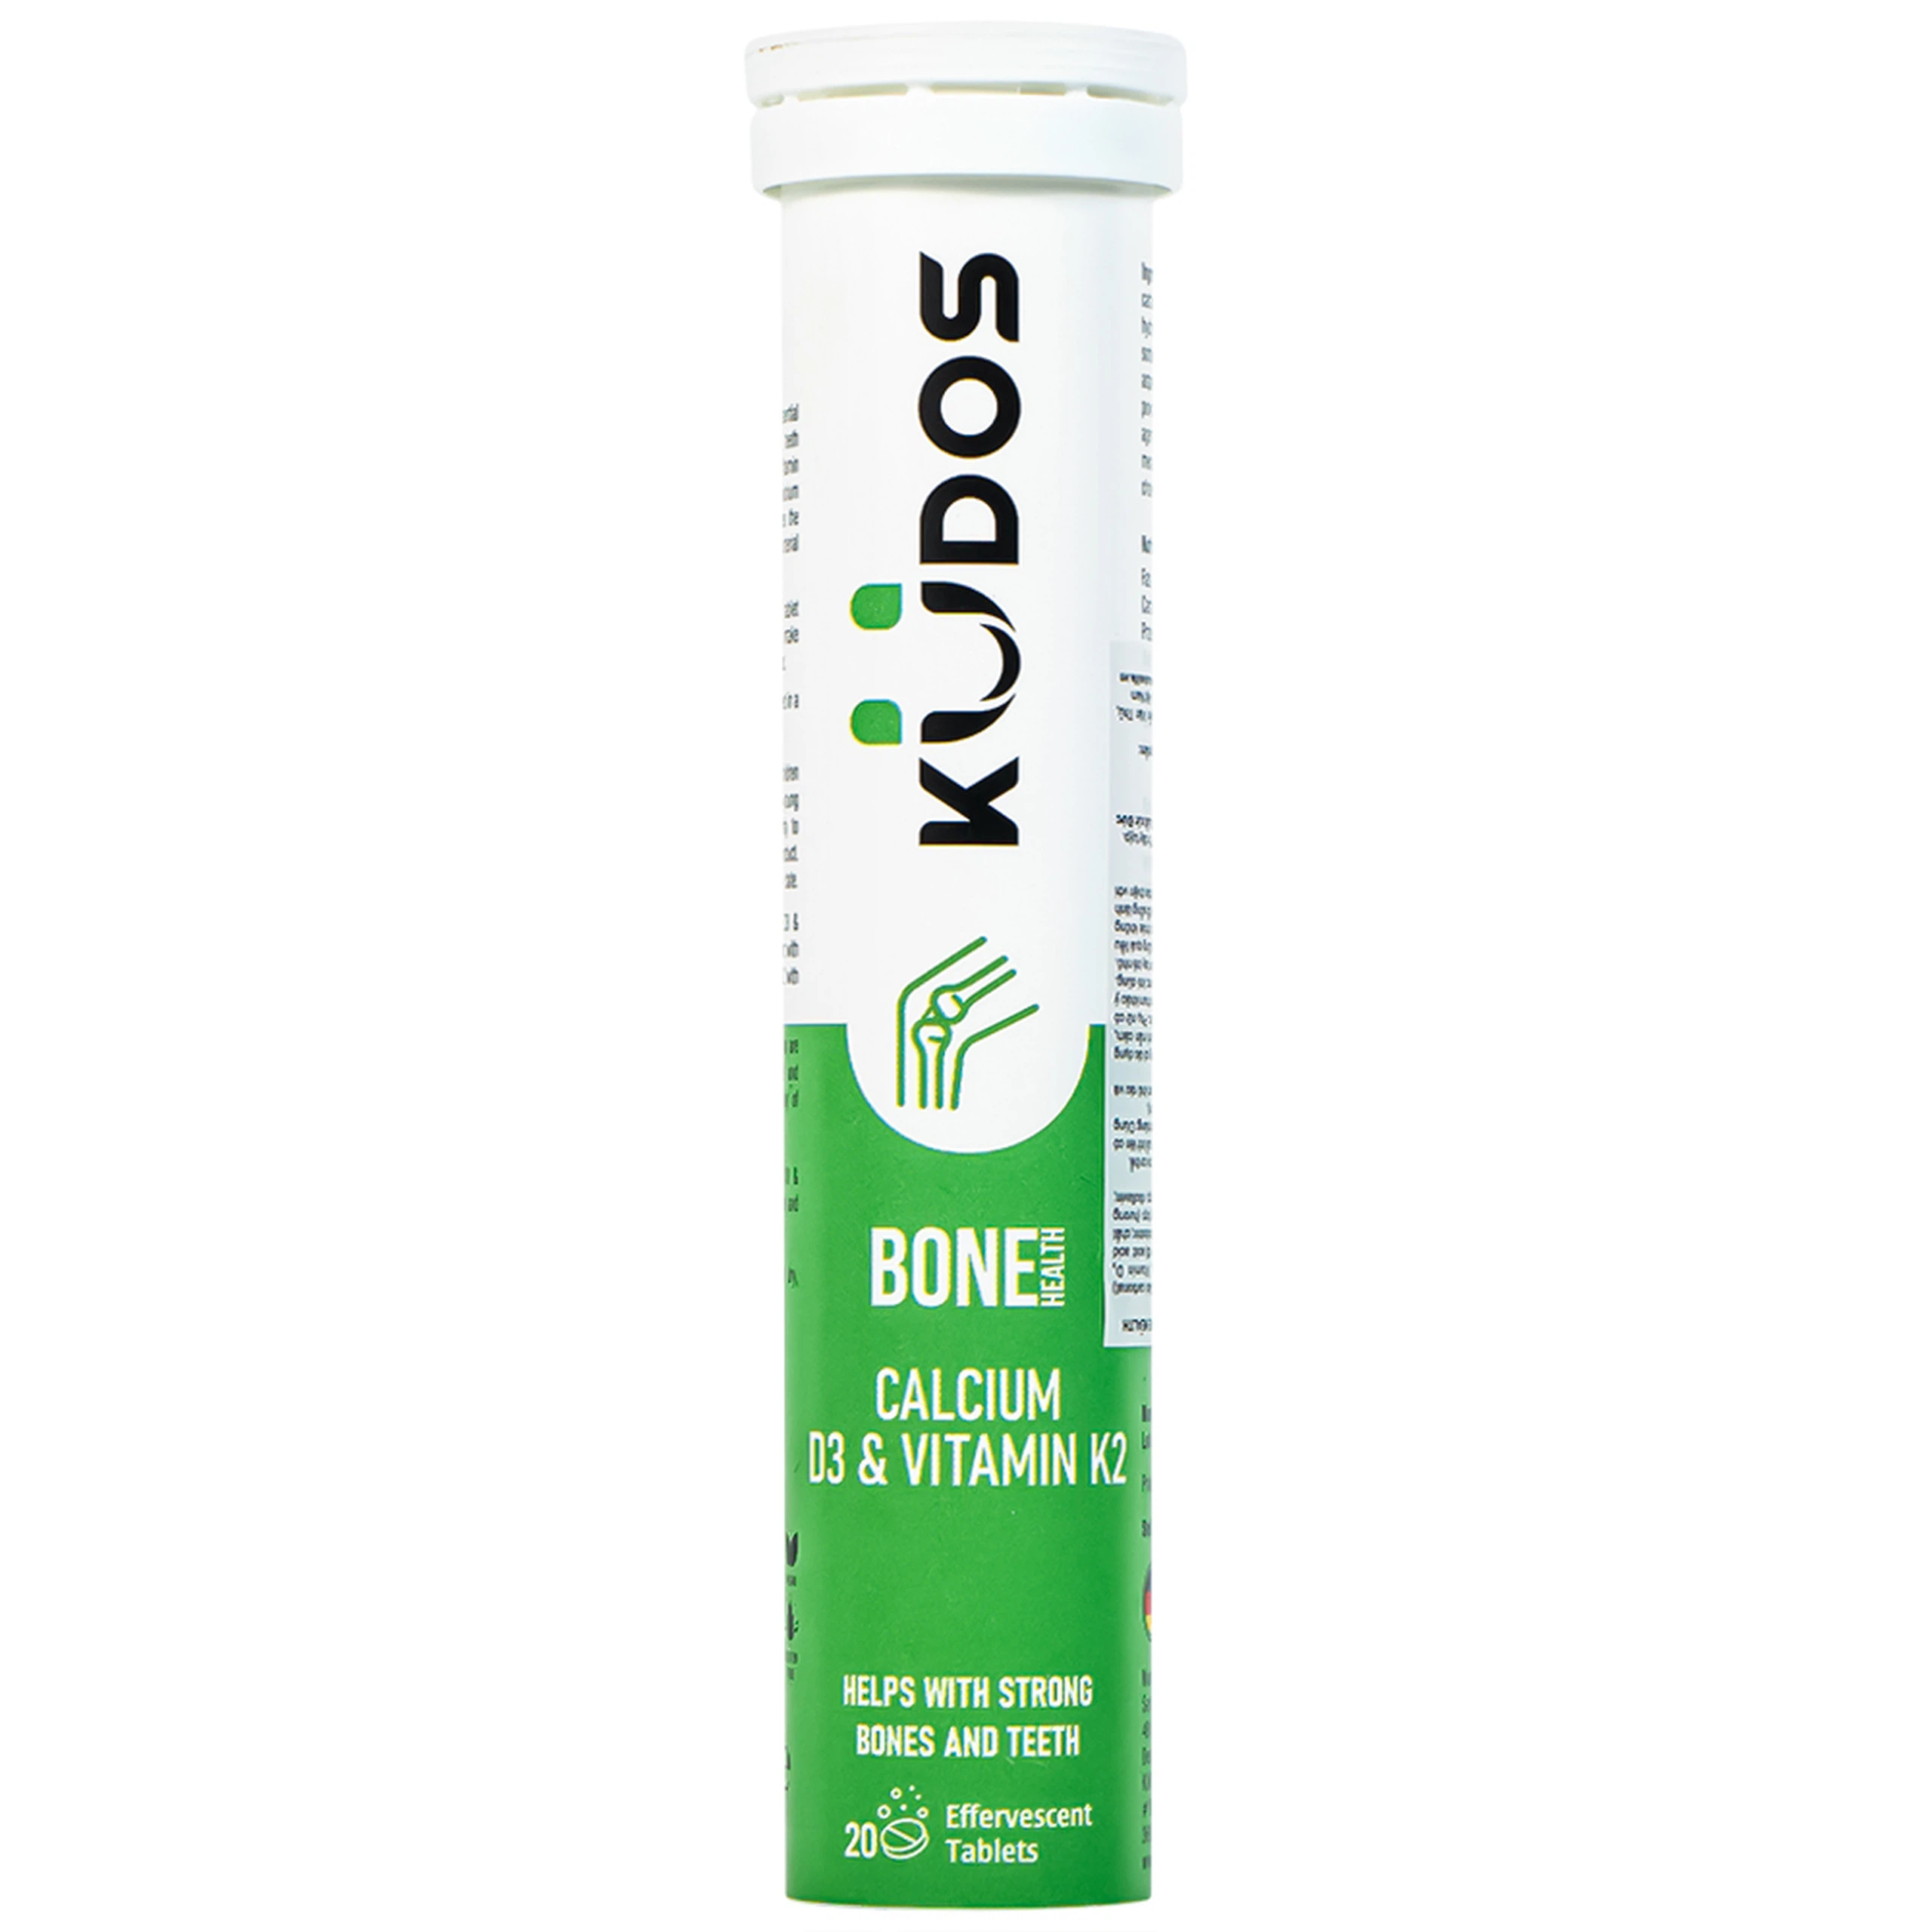 Viên sủi Kudos Bone hương cam bổ sung canxi, vitamin K2, vitamin D3 cho cơ thể (20 viên)